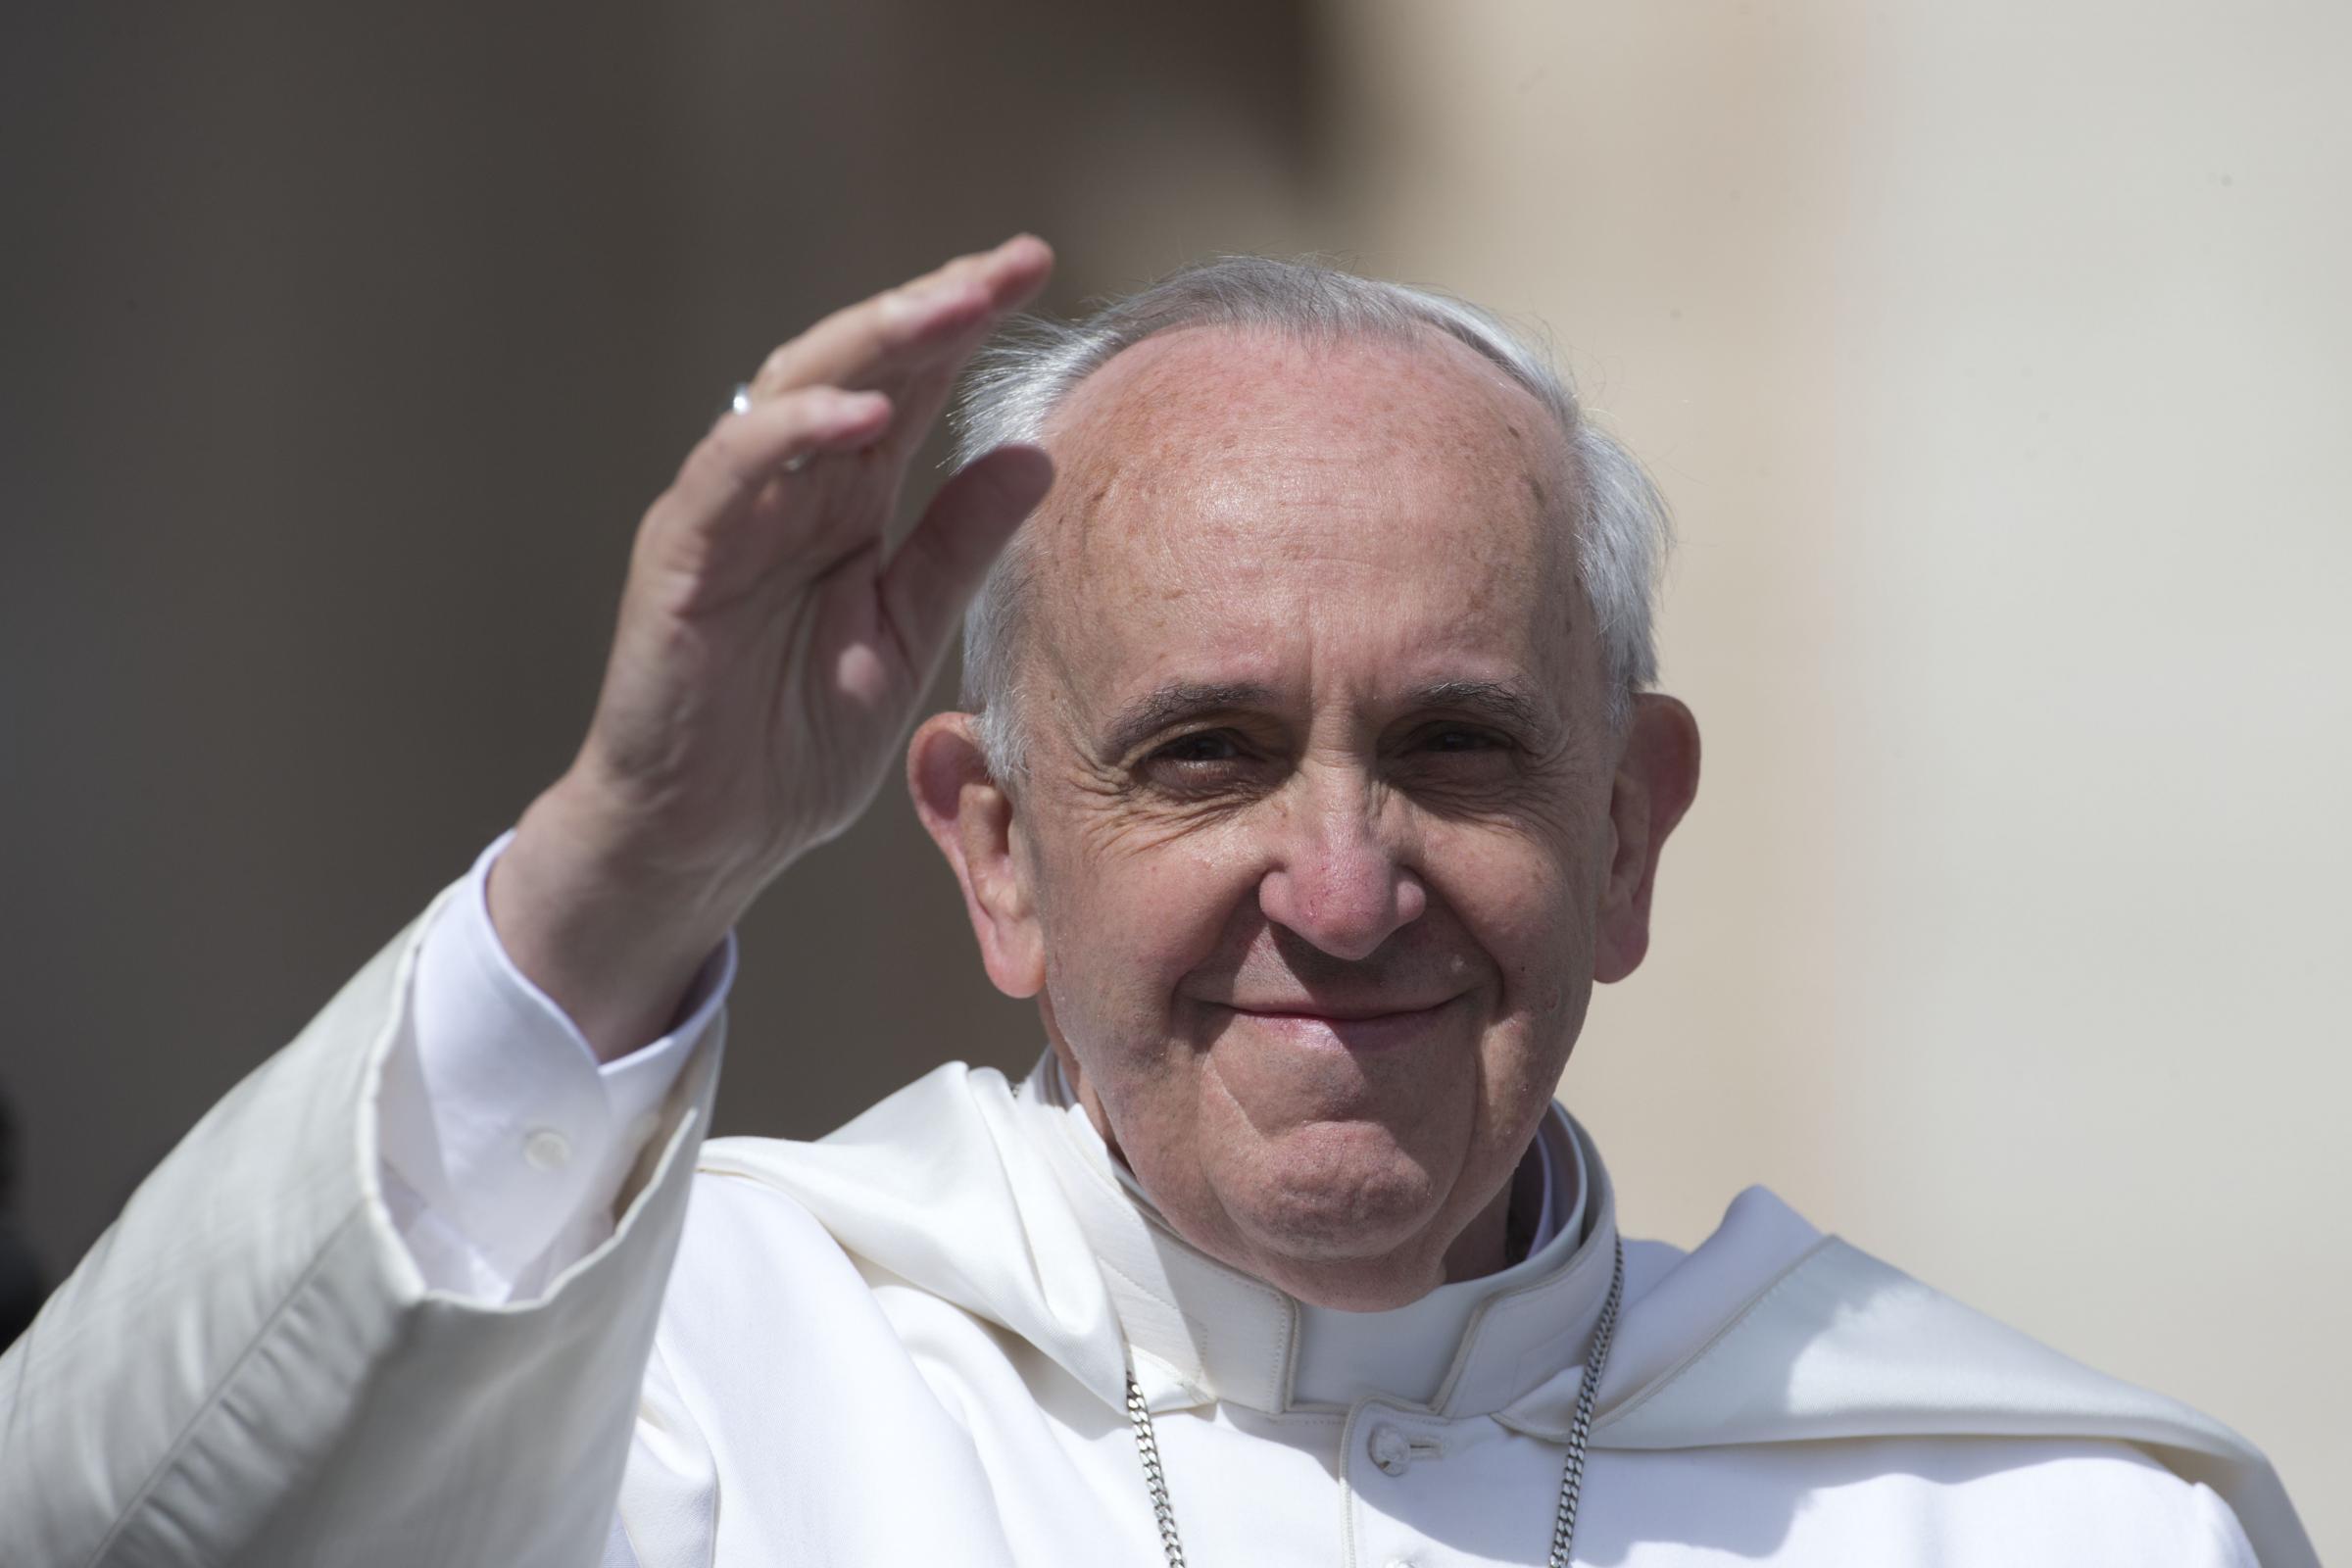 عظة قداسة البابا فرنسيس بمناسبة قداس “الشركة الكنسية”